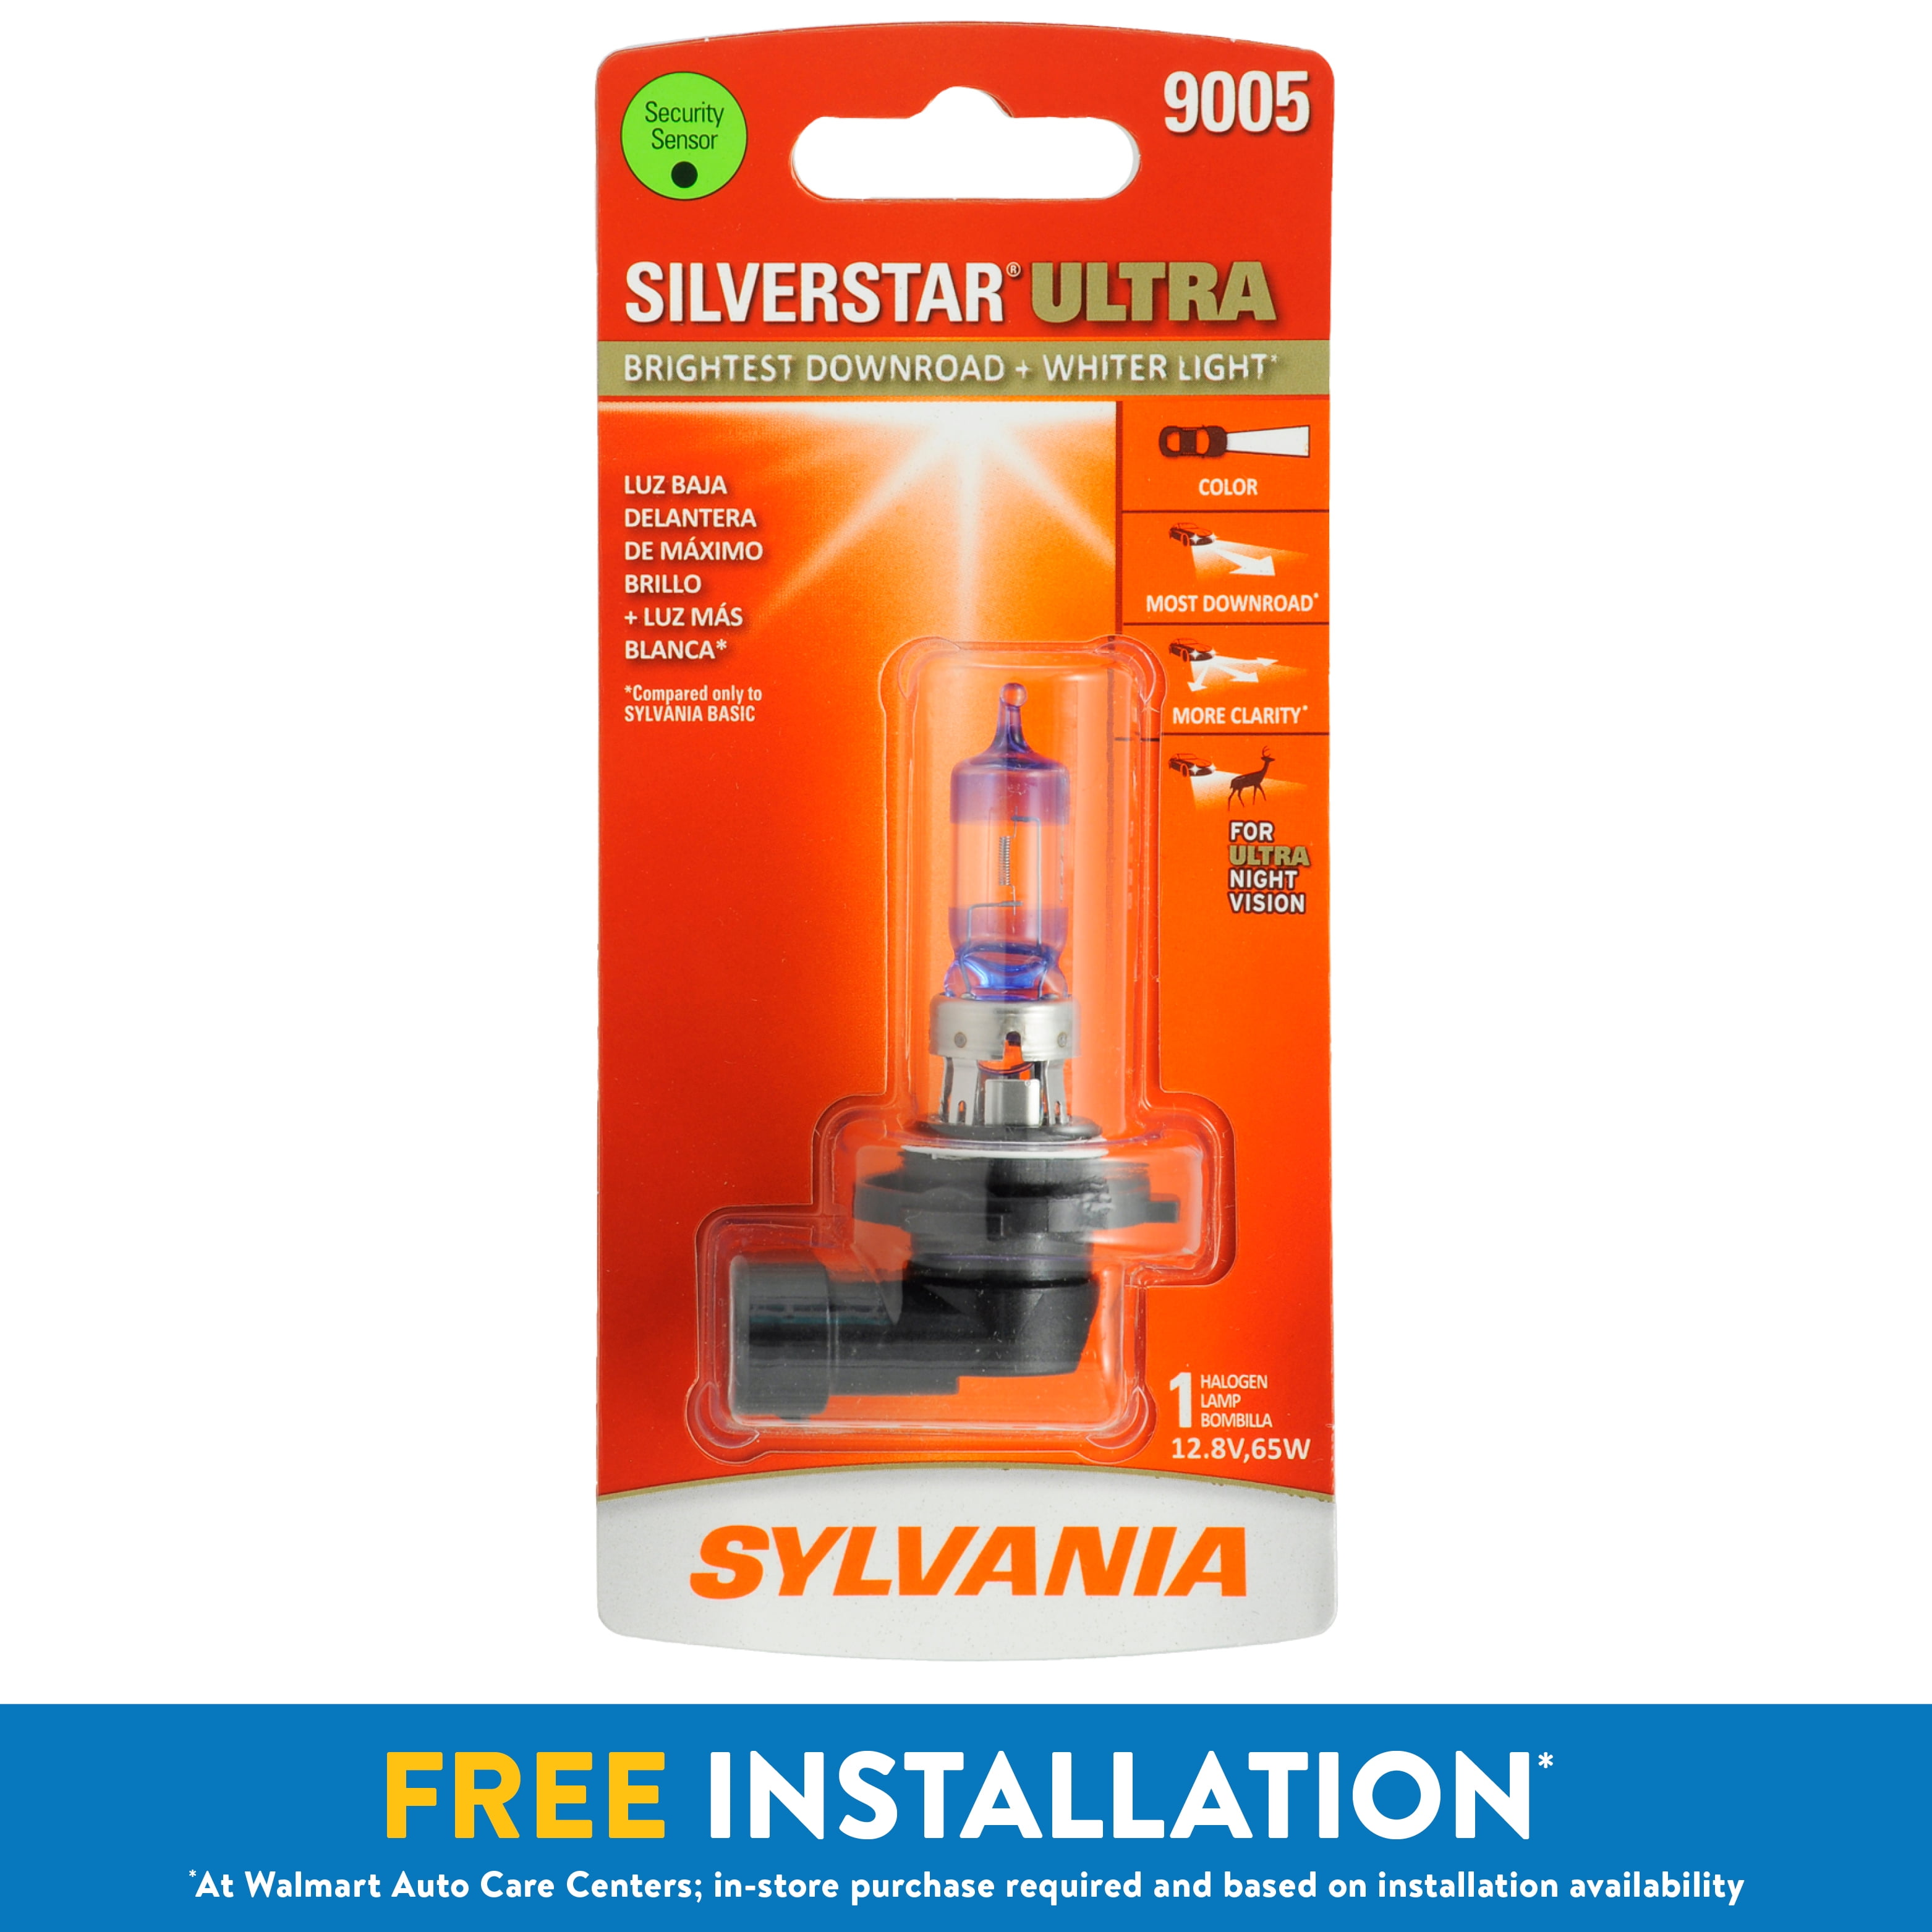 Sylvania 9005 SilverStar Ultra Halogen Headlight Bulb, Pack of 1.